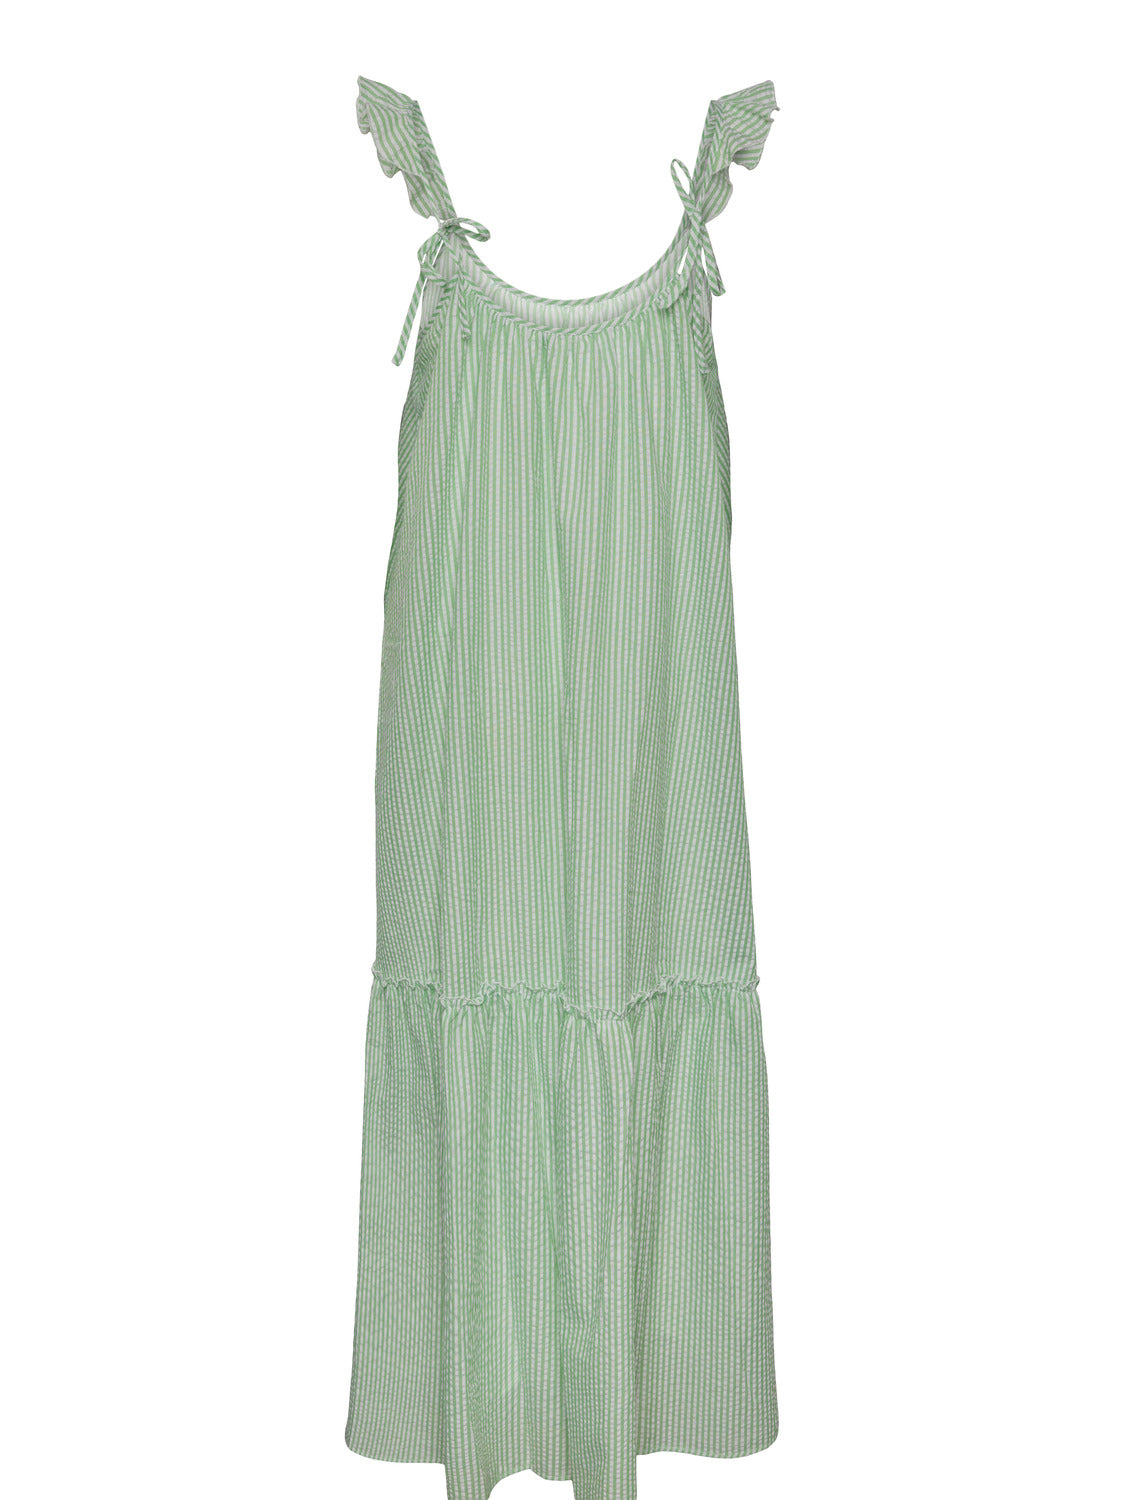 TIA Dress - Summer Green